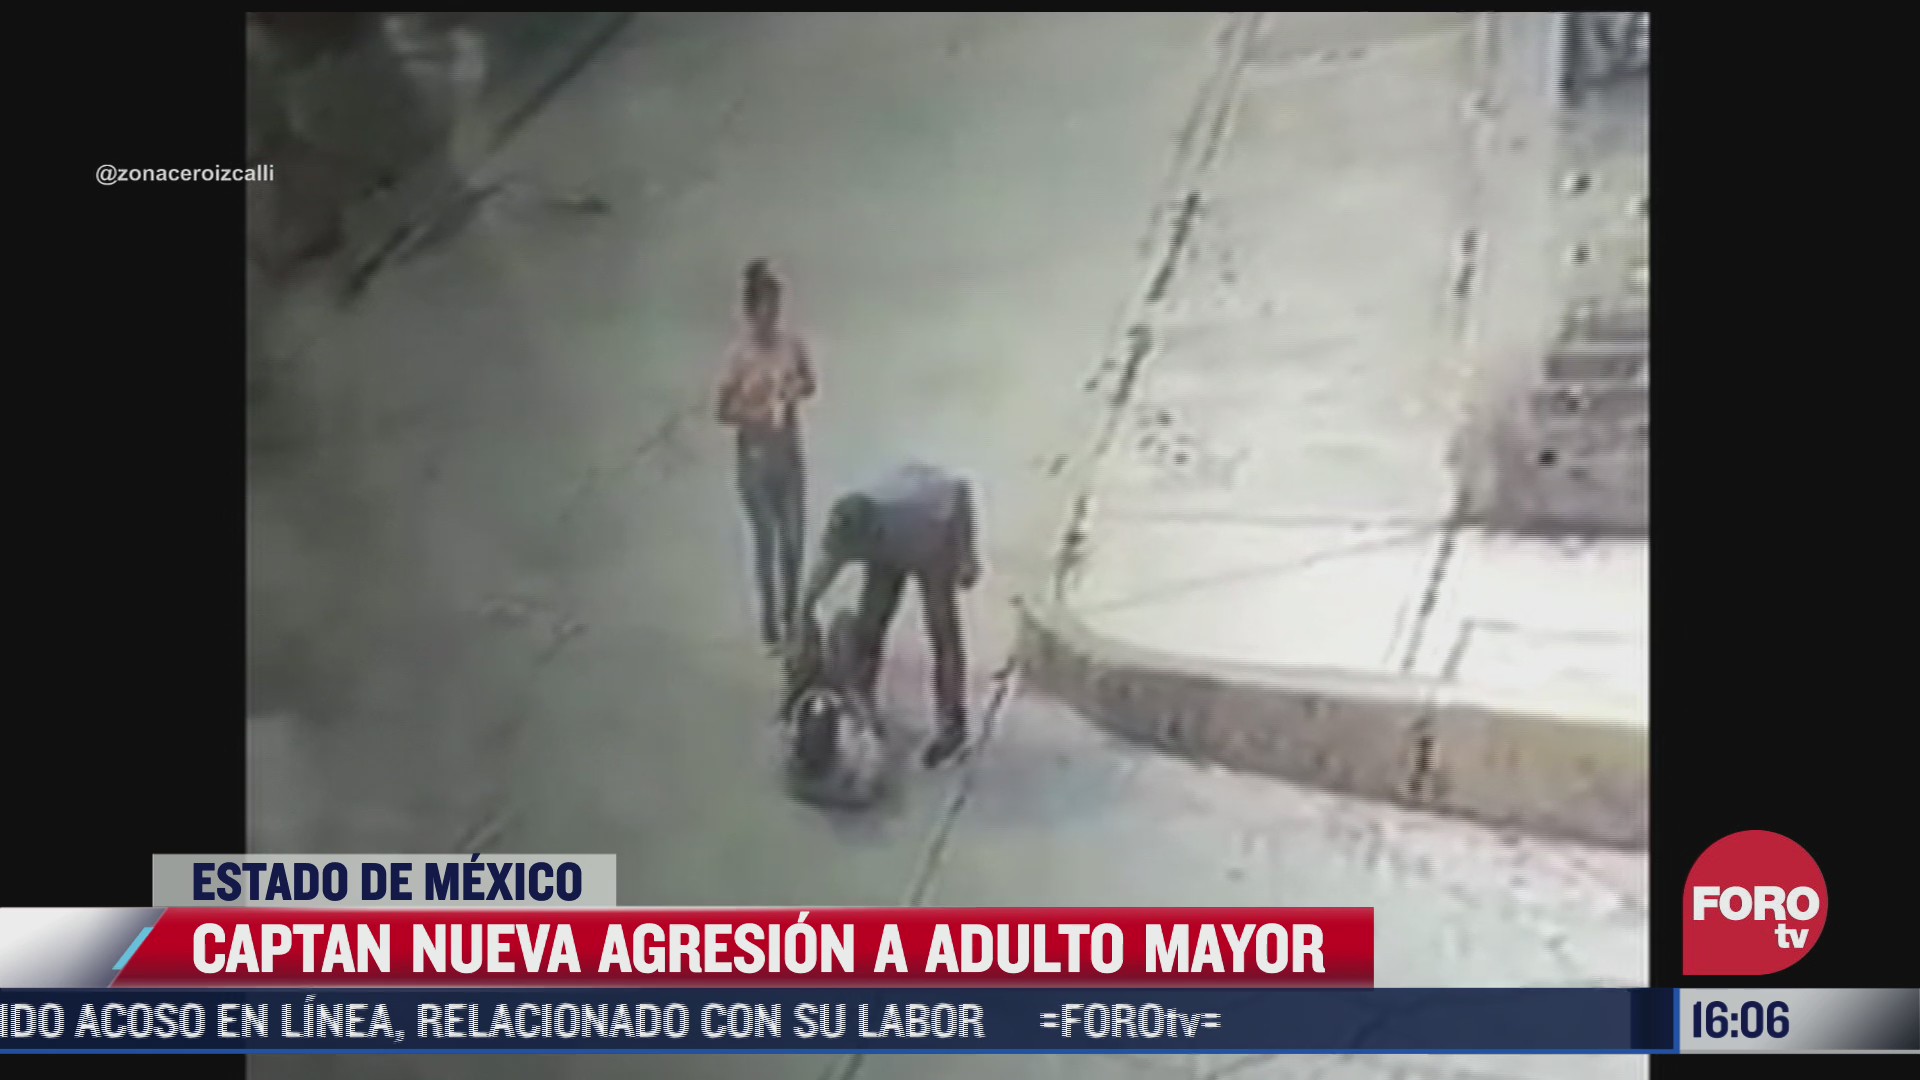 captan nueva agresion a adulto mayor en calles de estado de mexico